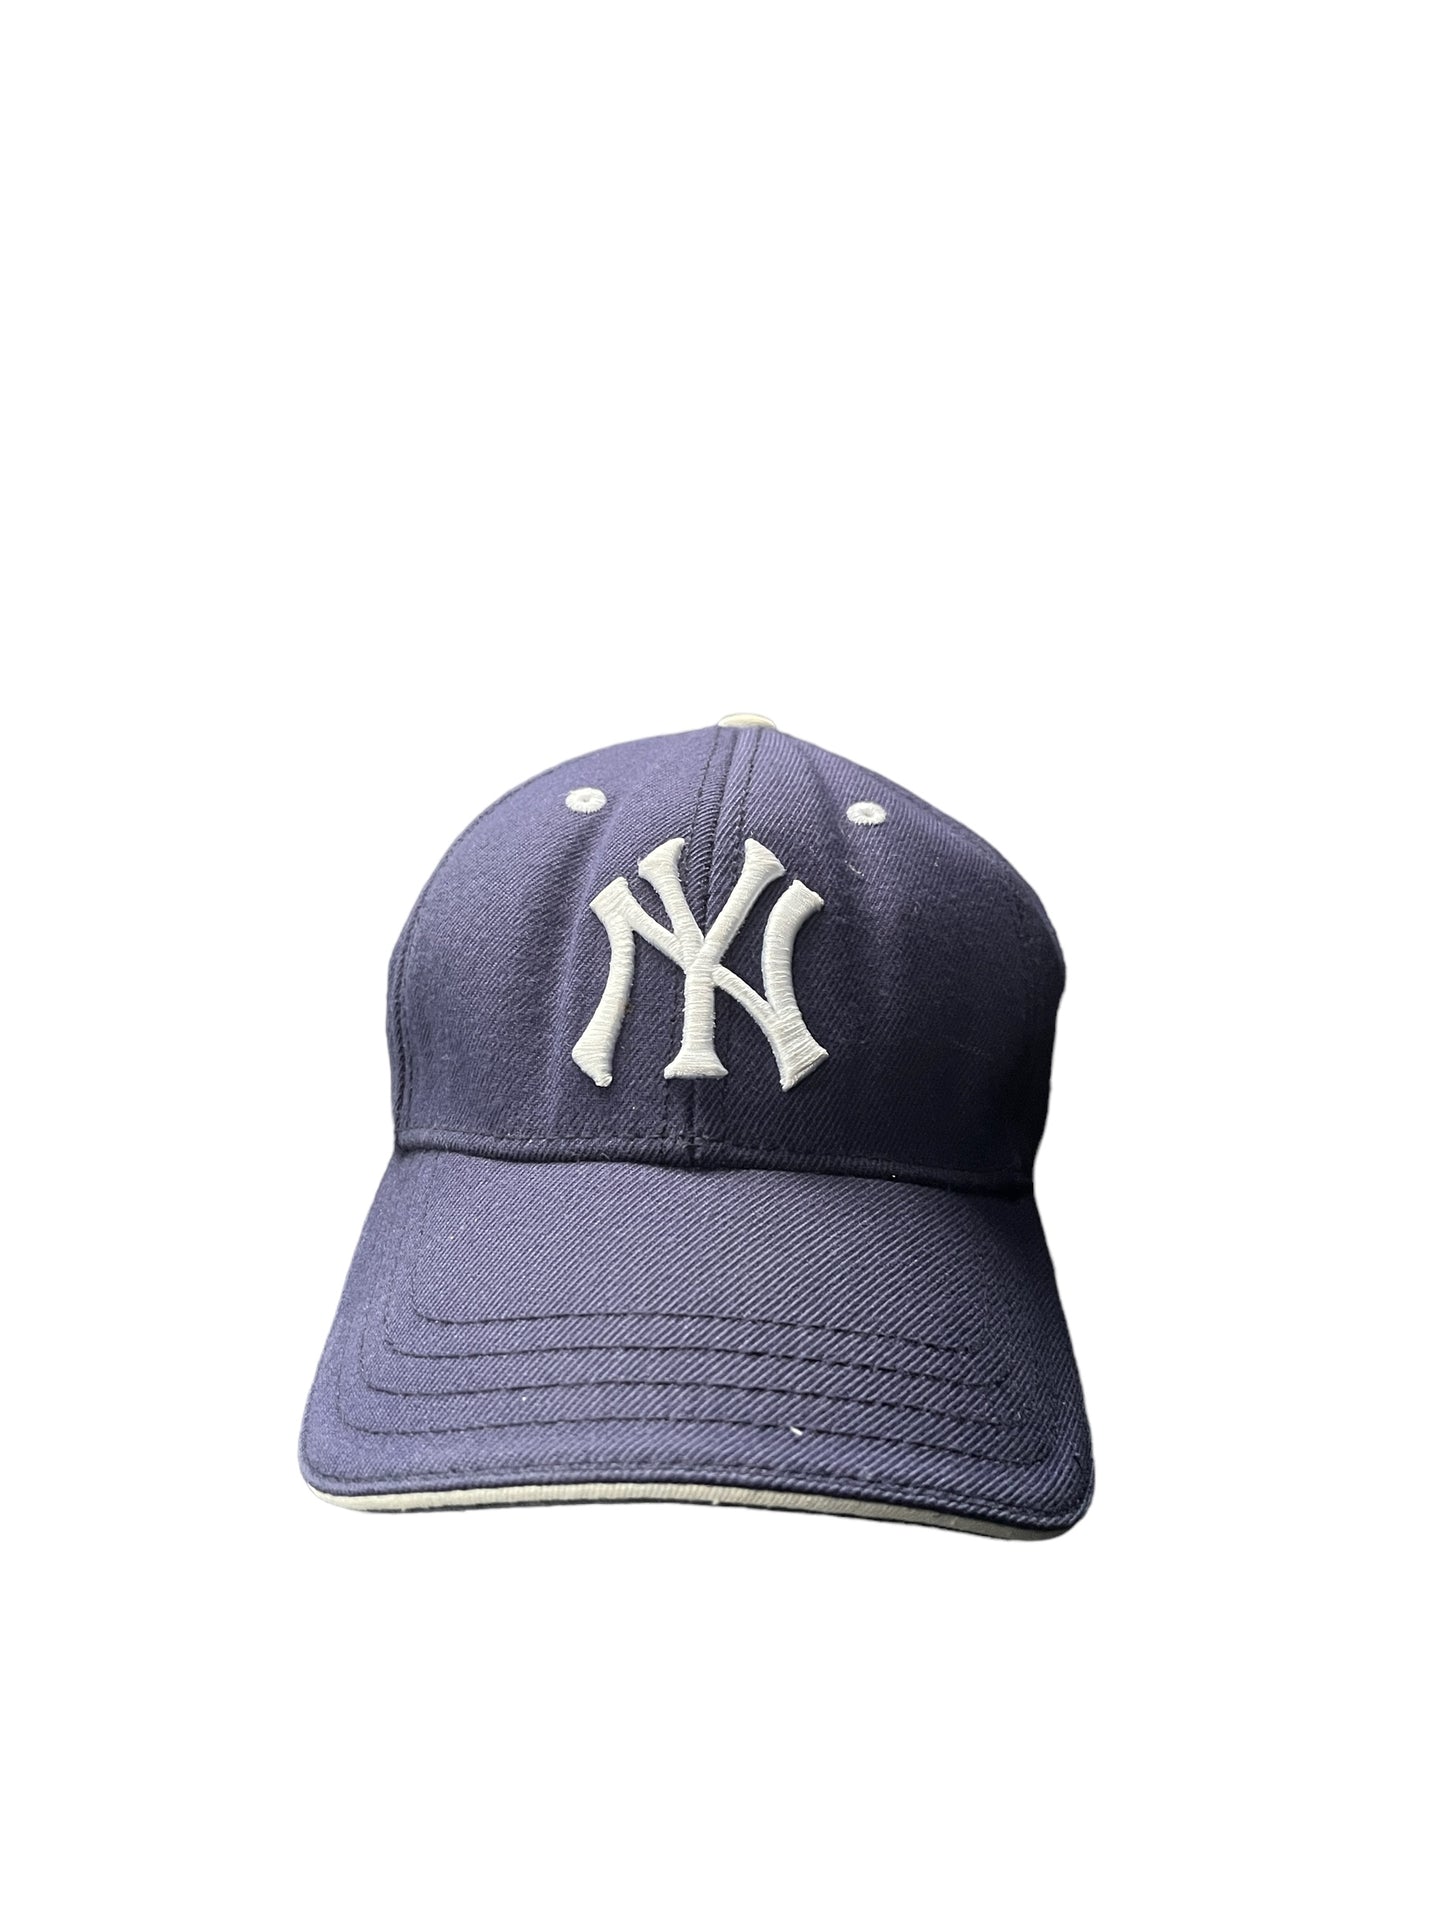 Vintage American Needle New York Yankees Hat